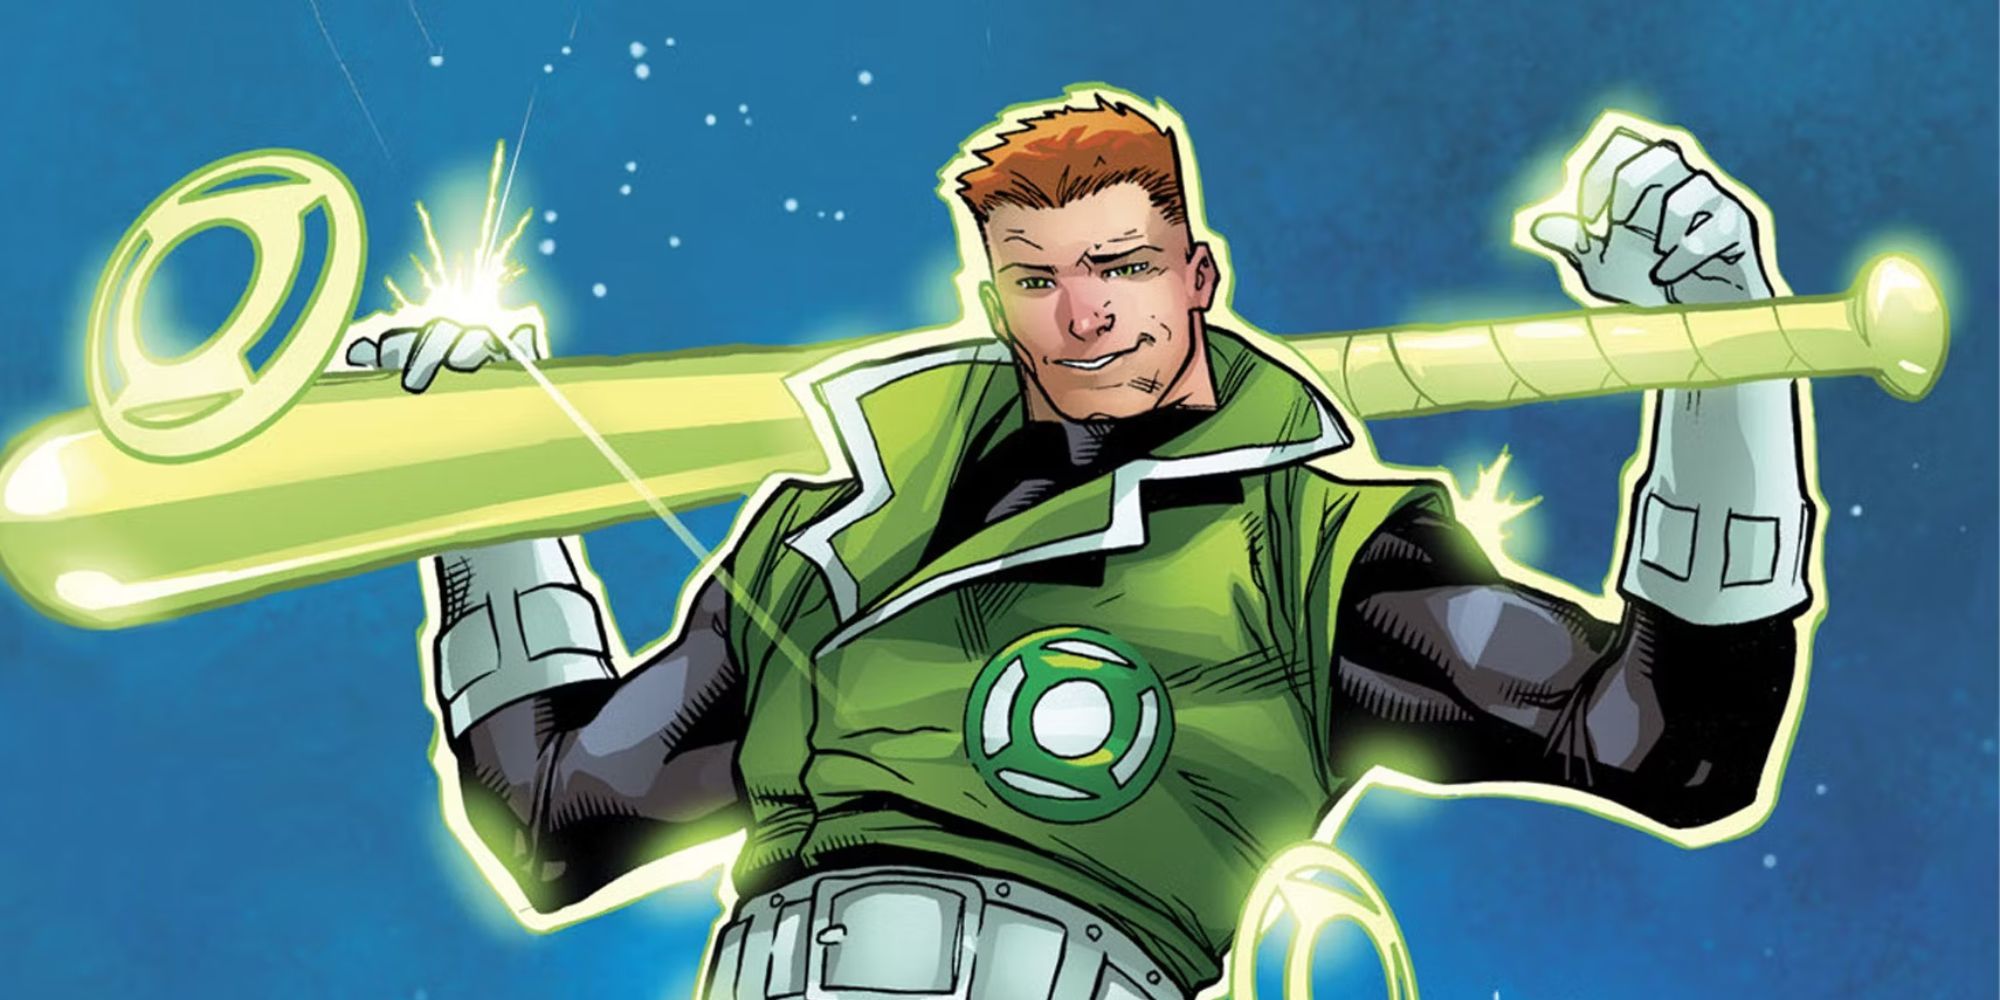 DC's Green Lantern Guy Gardner holding a baseball bat around his neck